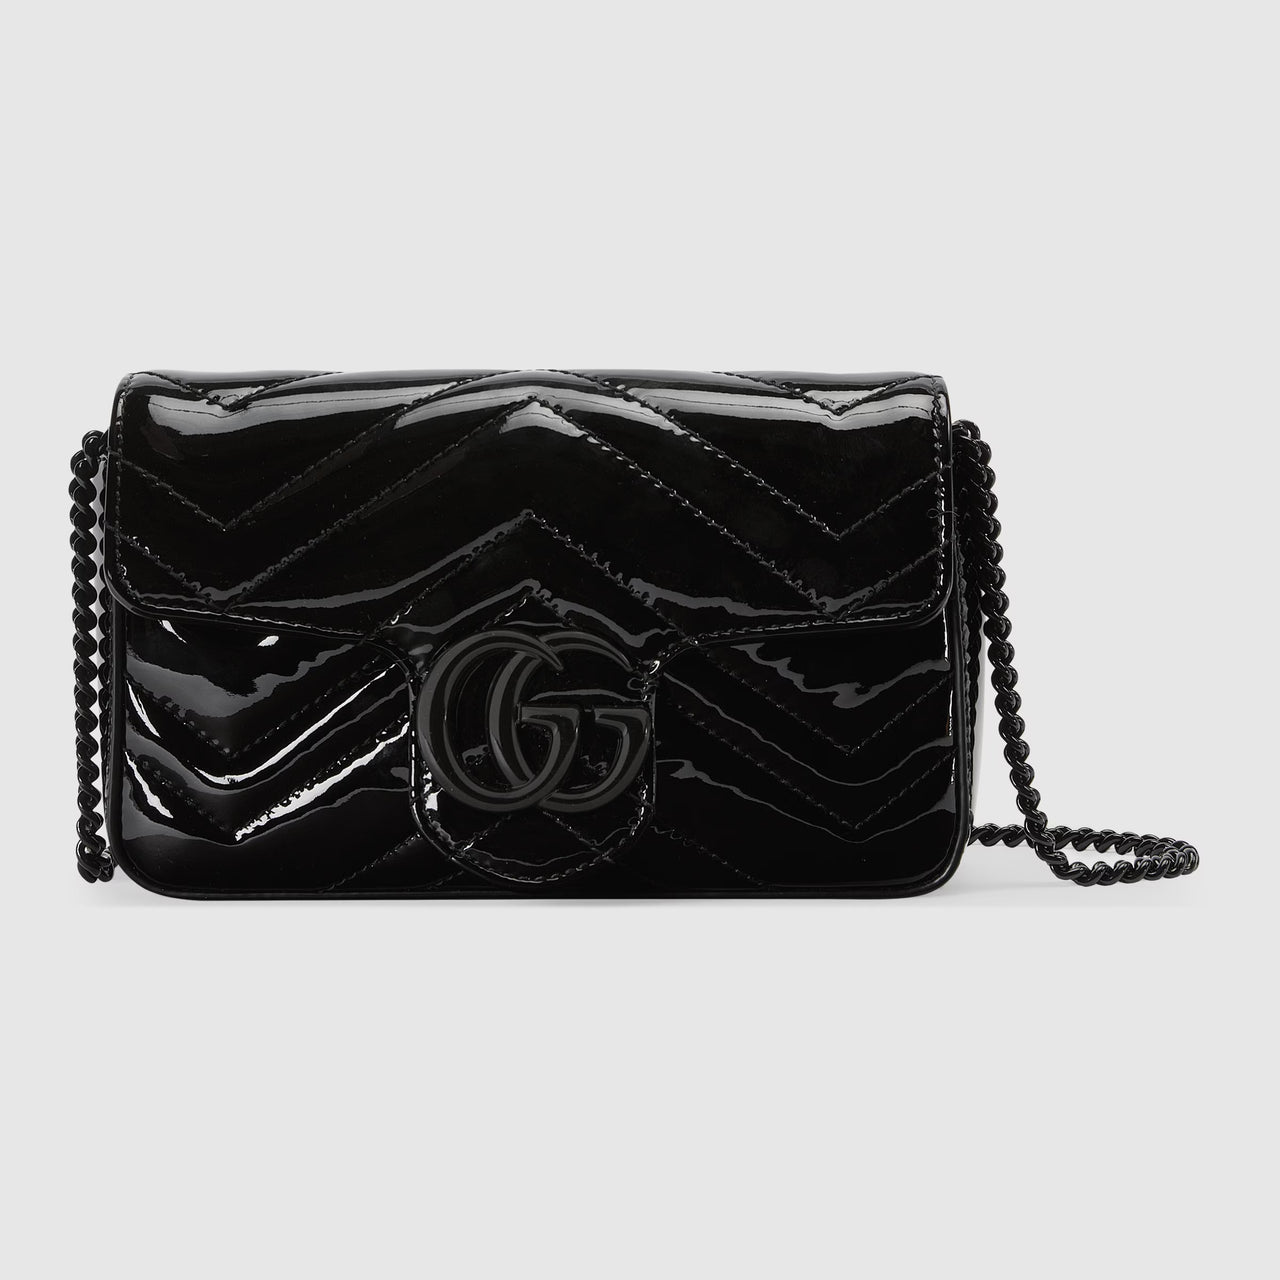 Gucci GG Marmont Patent Super Mini Bag  (Black Patent Leather )